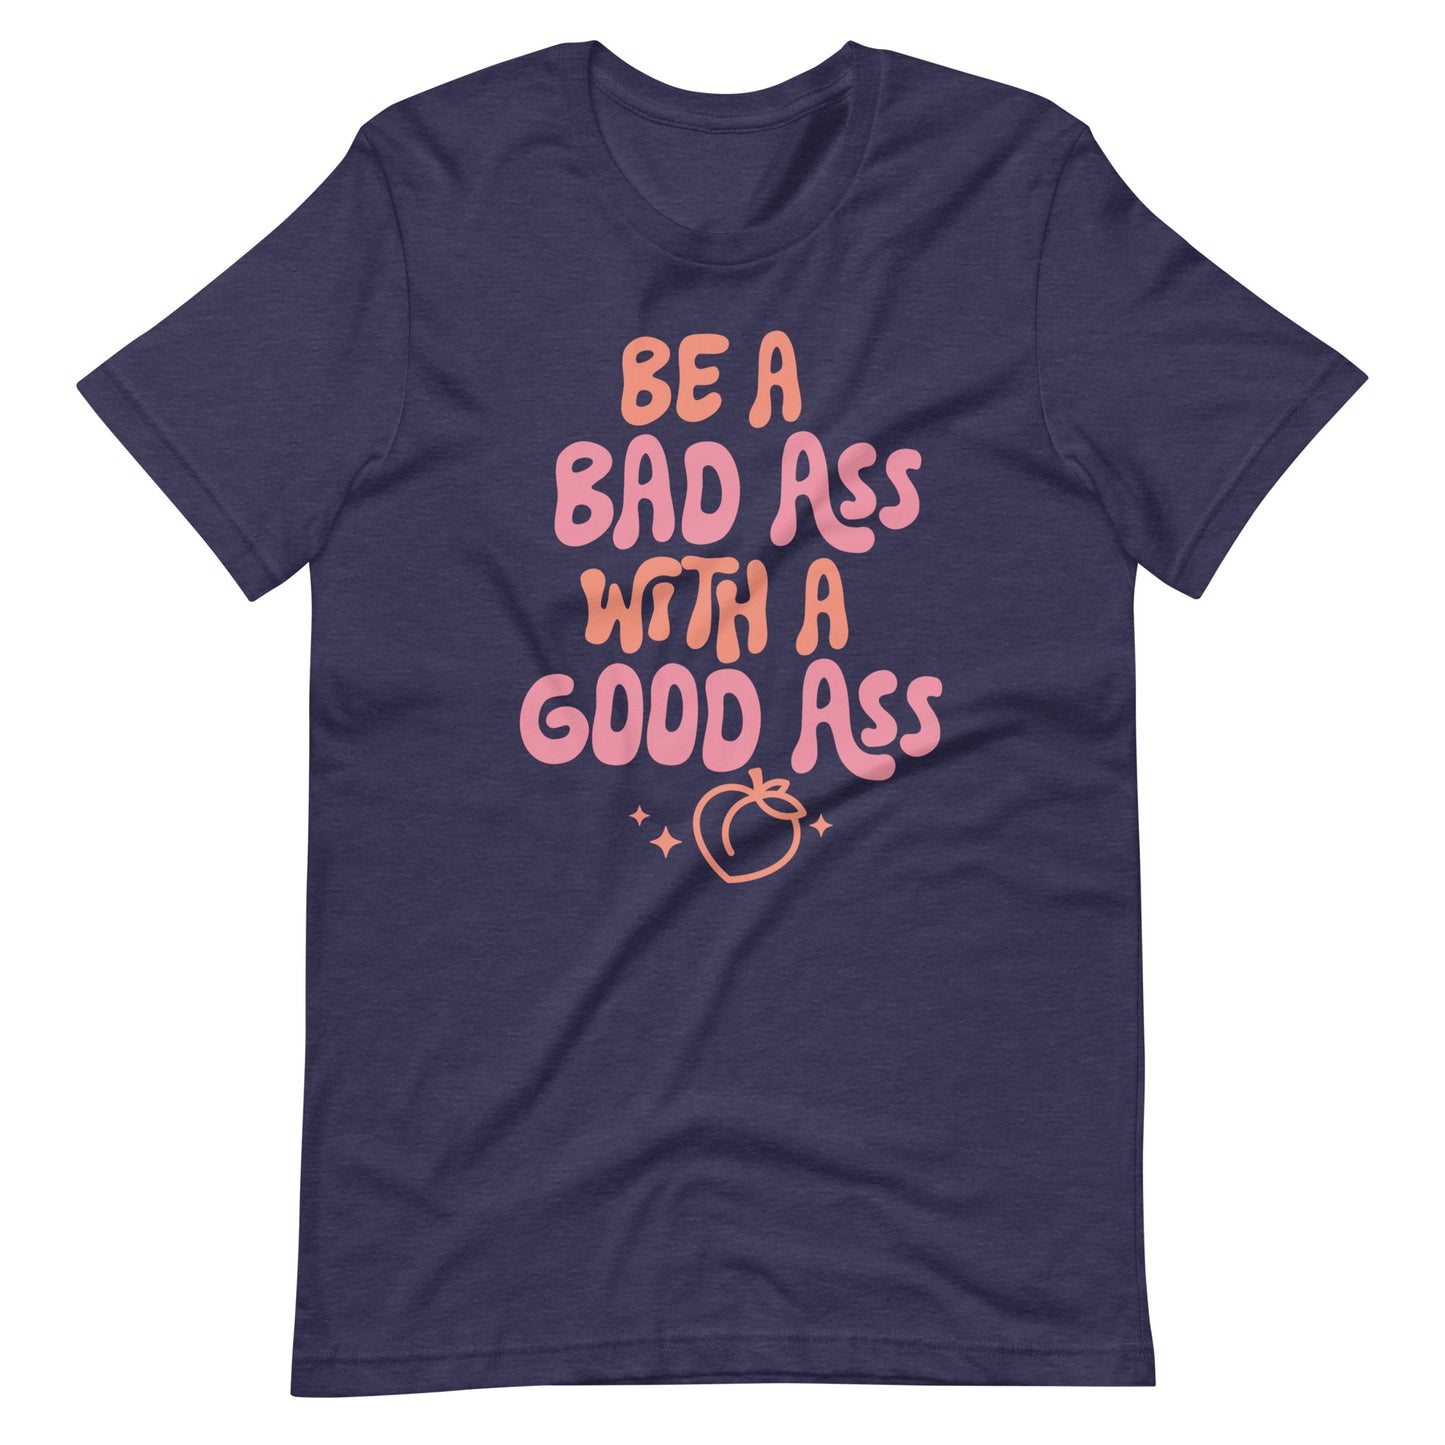 Be a Badass t-shirt